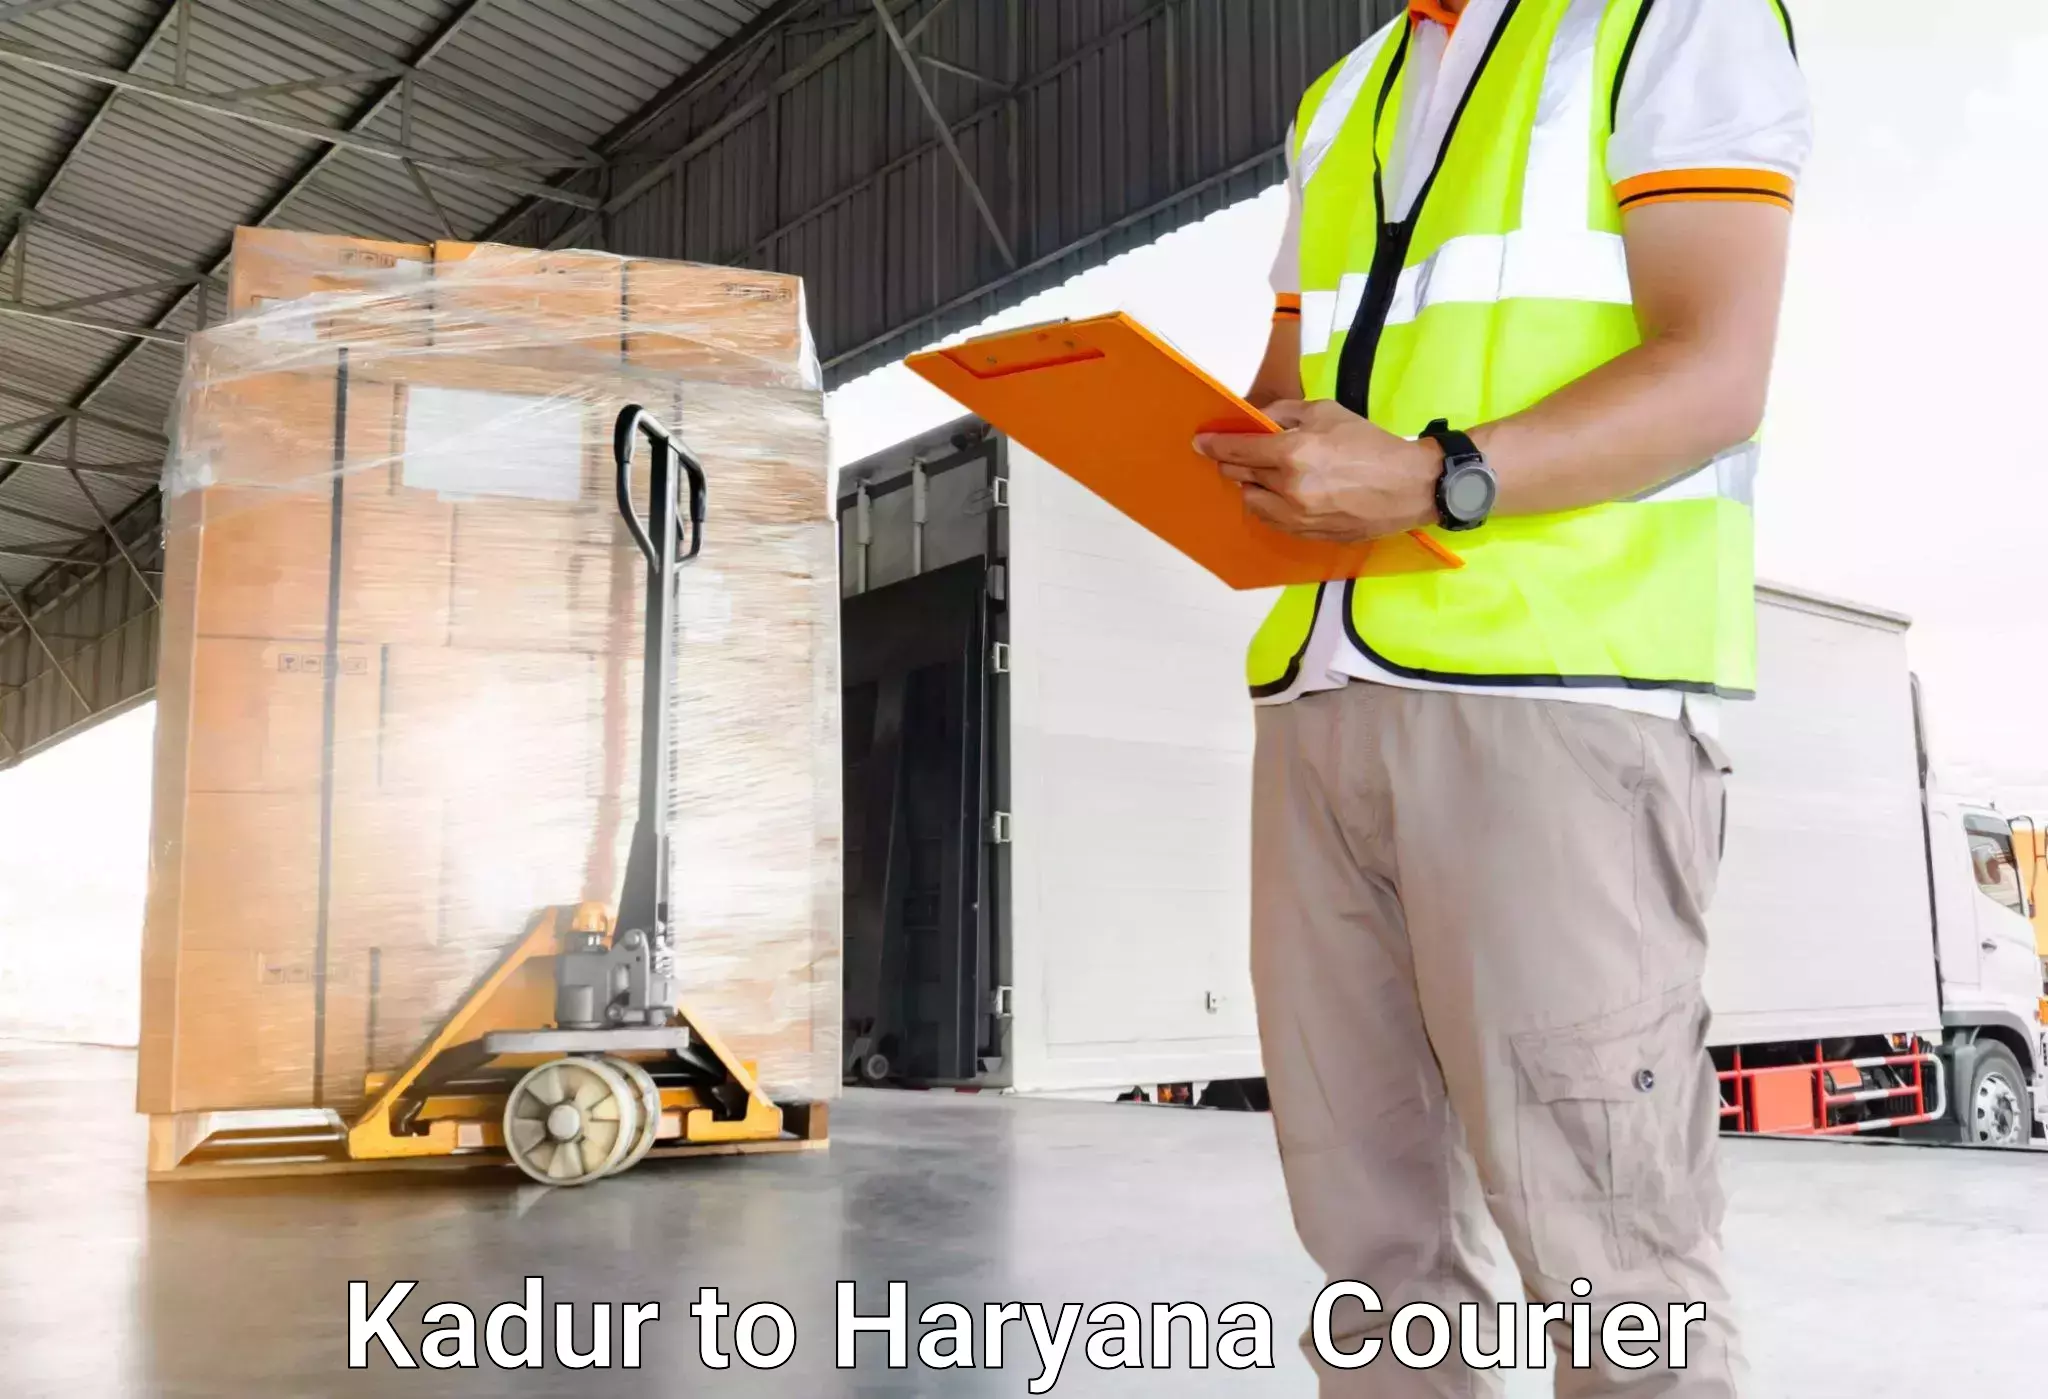 Holiday season luggage delivery Kadur to NCR Haryana